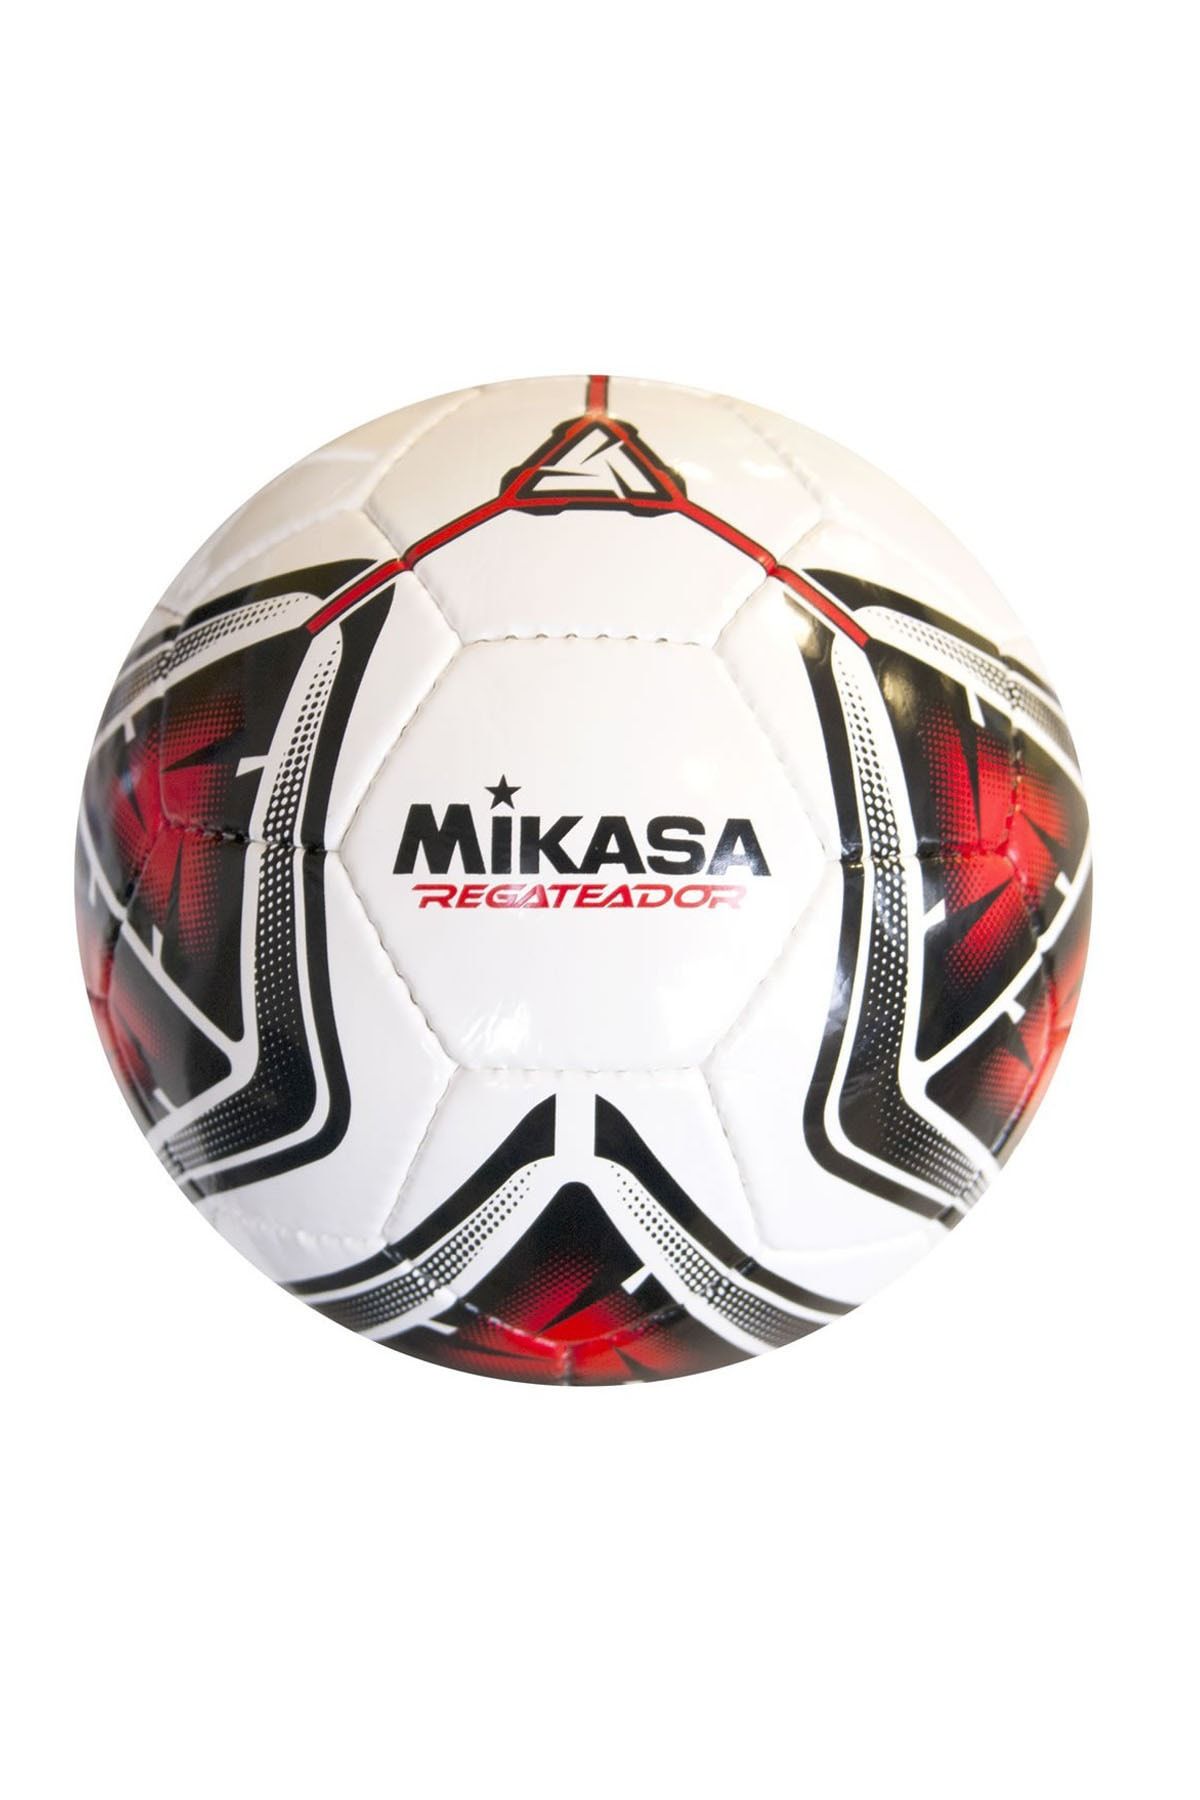 Avessa Mikasa Regateador Futbol Topu No 4 Kırmızı